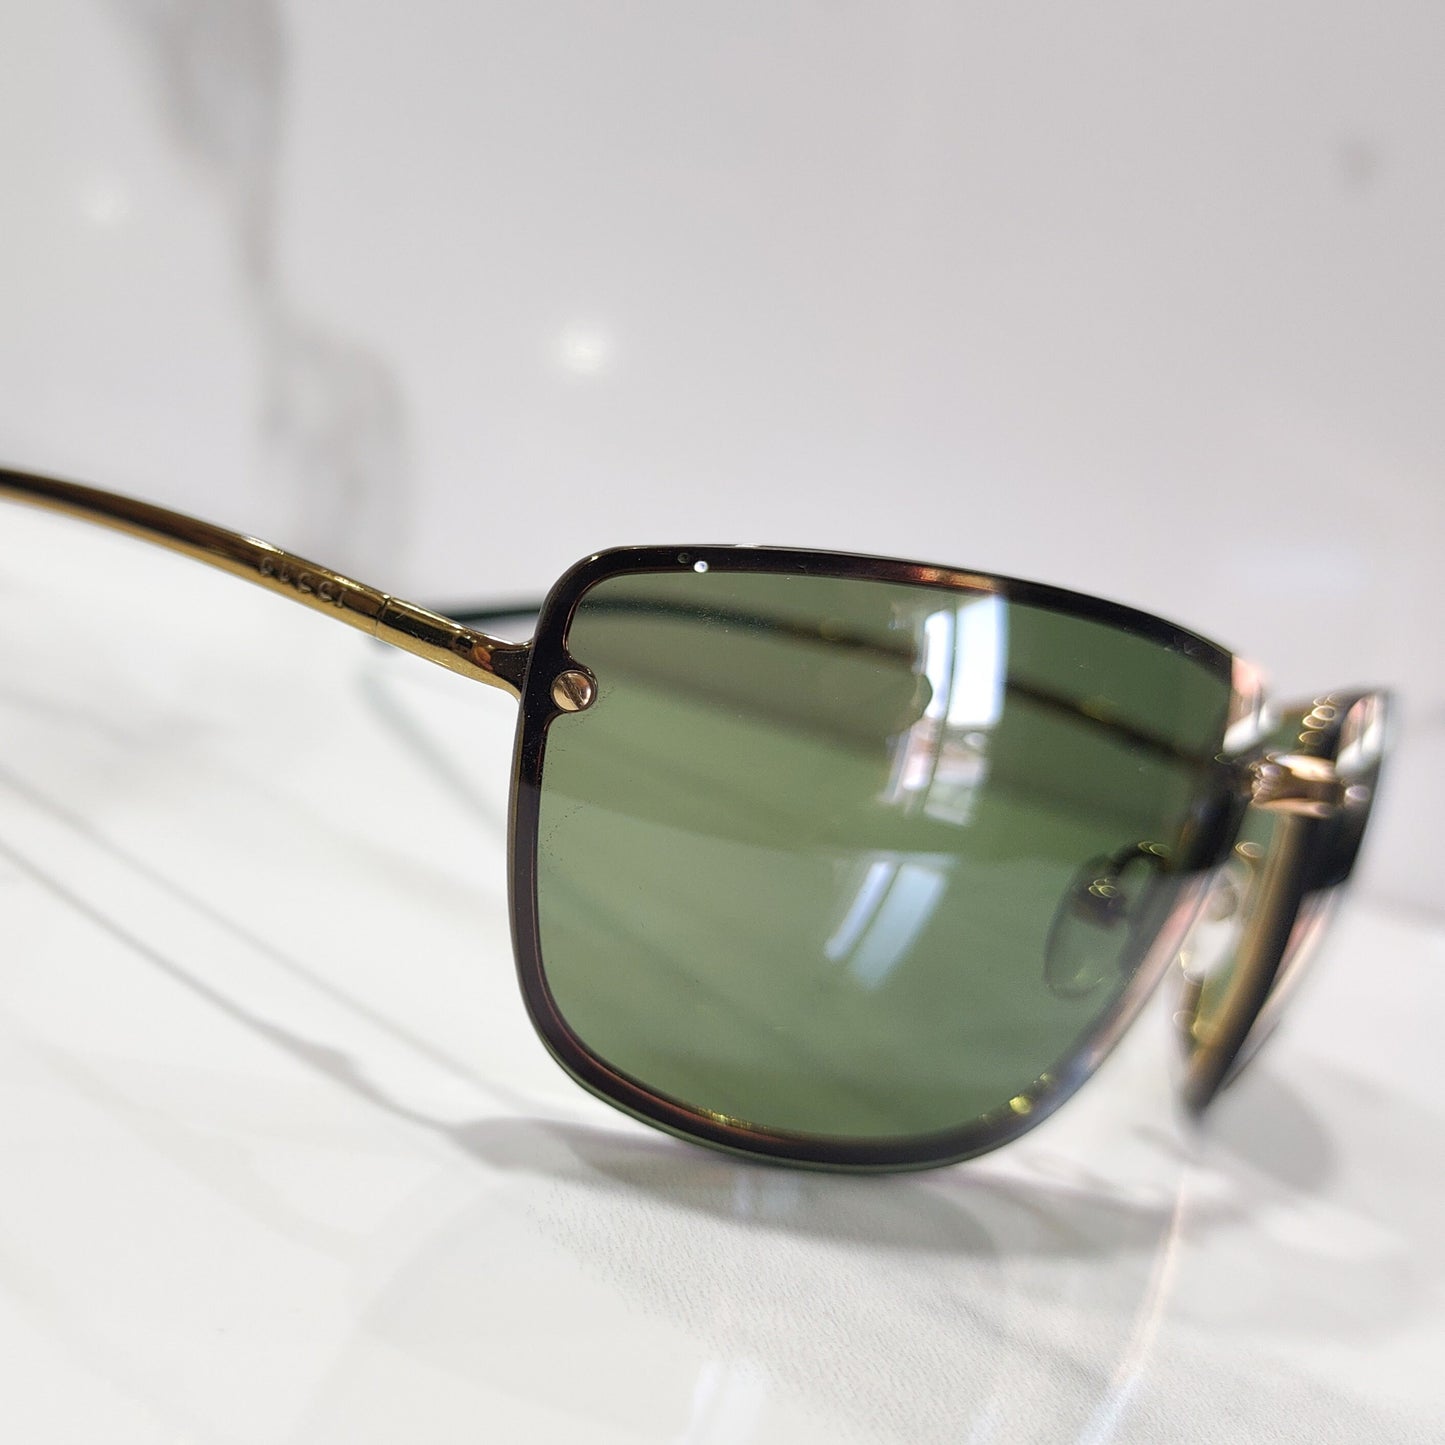 Gucci Tom Ford GG 1692 occhiali da sole vintage verde senza montatura occhiali lunette brille y2k